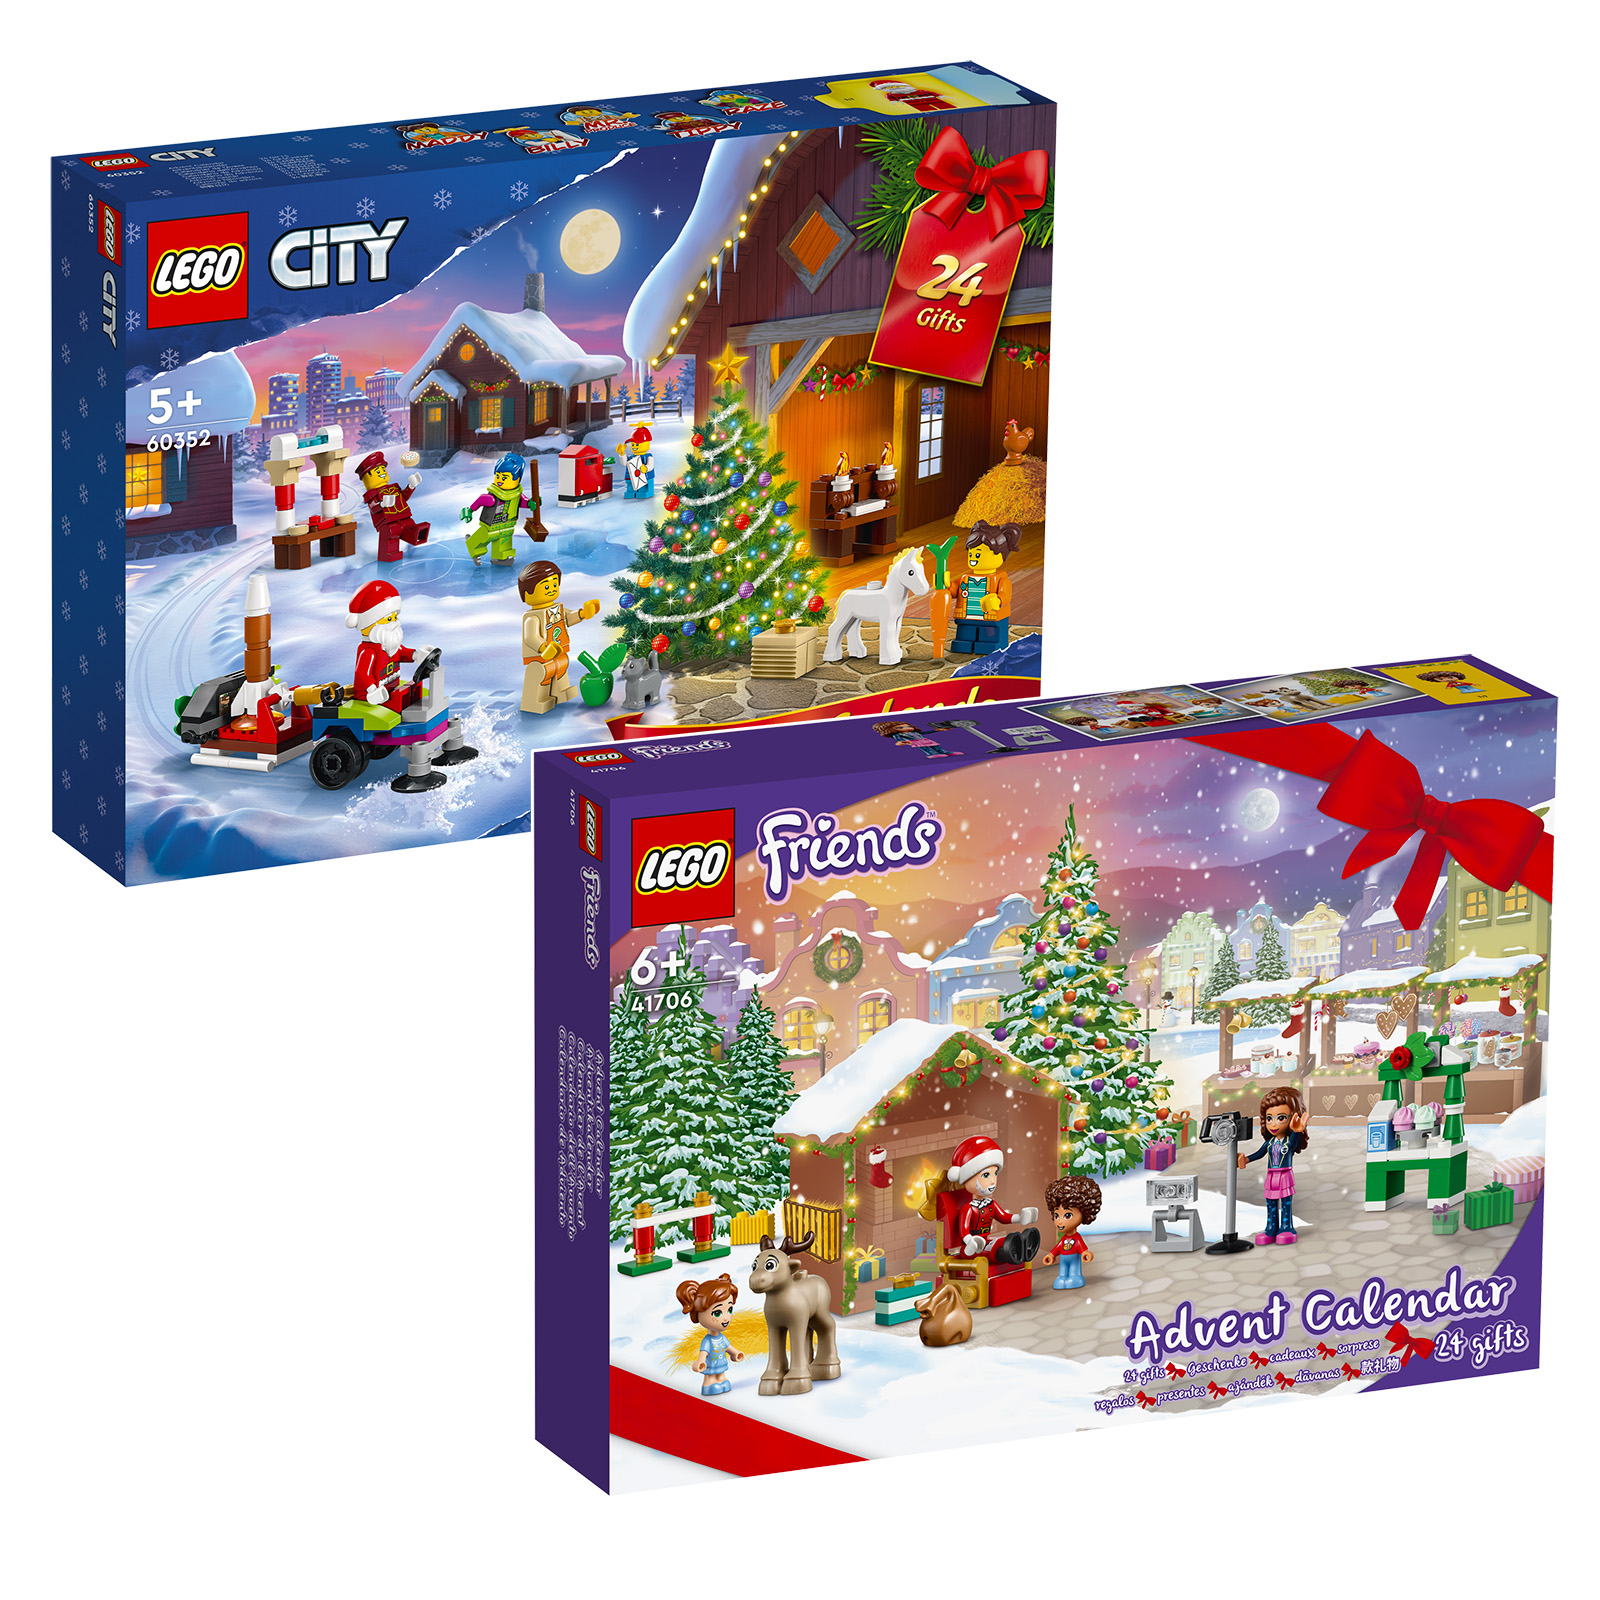 2022 m. advento kalendoriai LEGO CITY & Friends: rinkinius rasite parduotuvėje